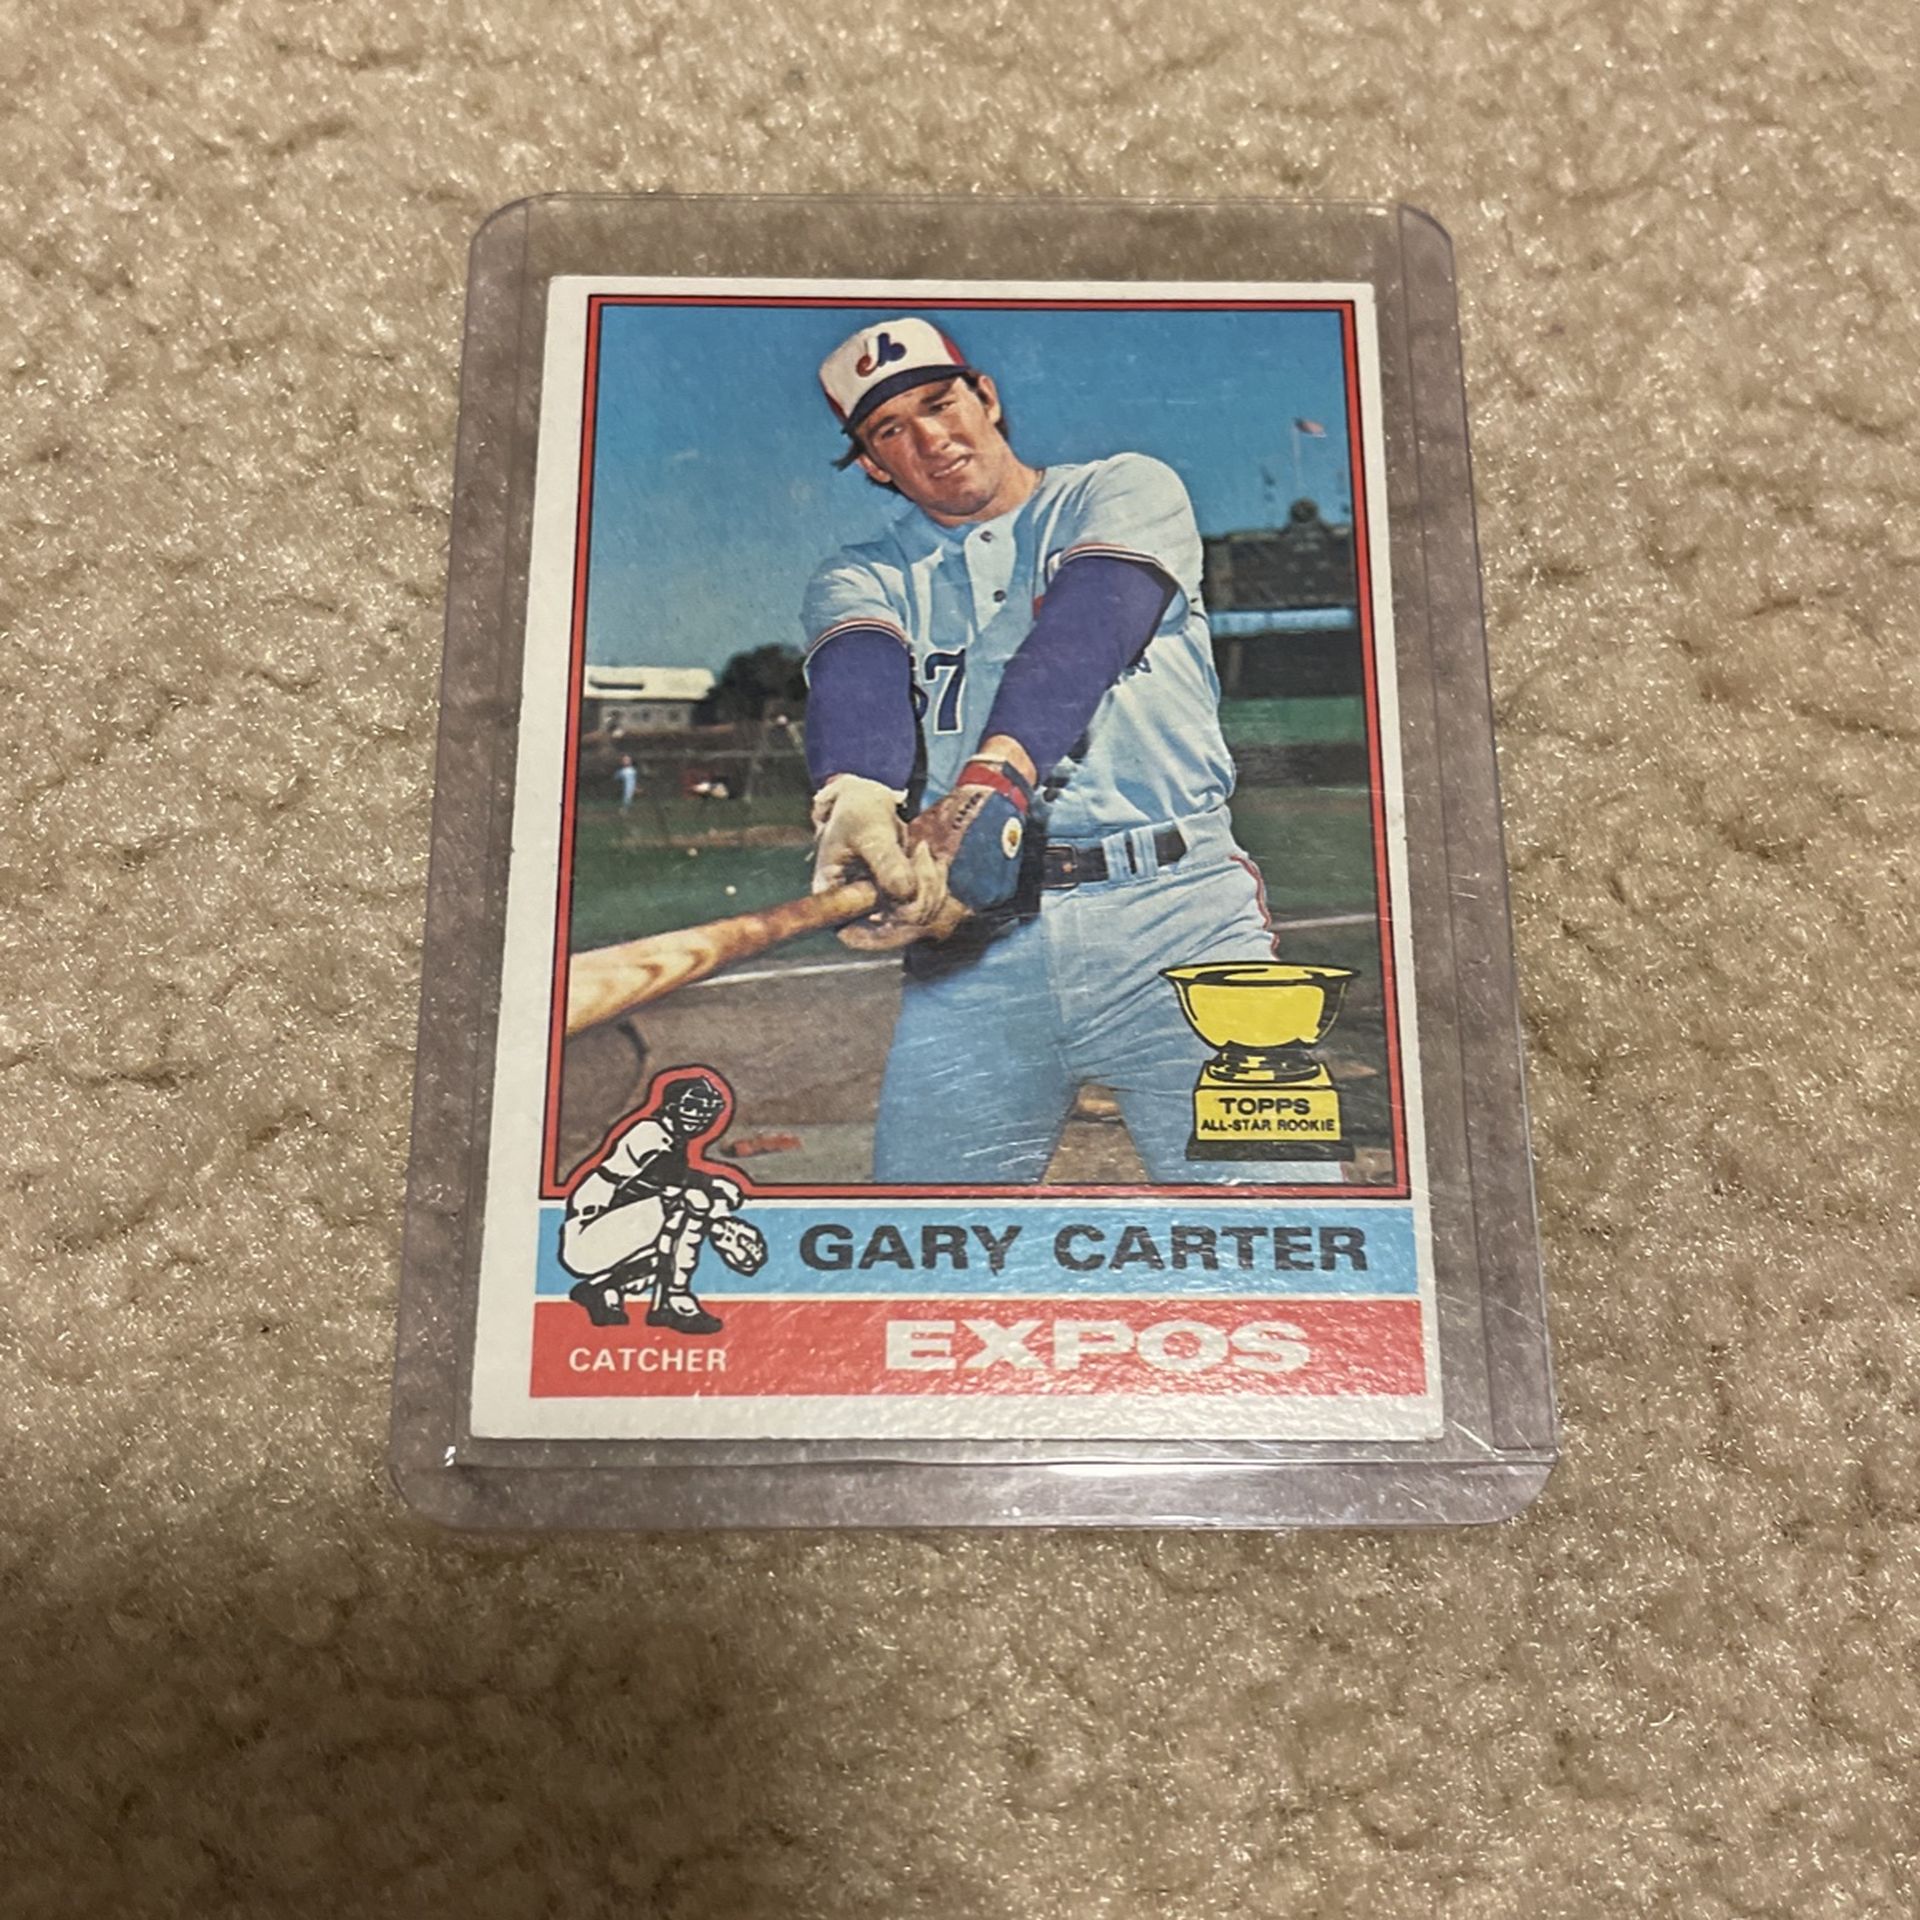 1976 Topps Gary Carter Montreal Expos #441 Baseball Card 